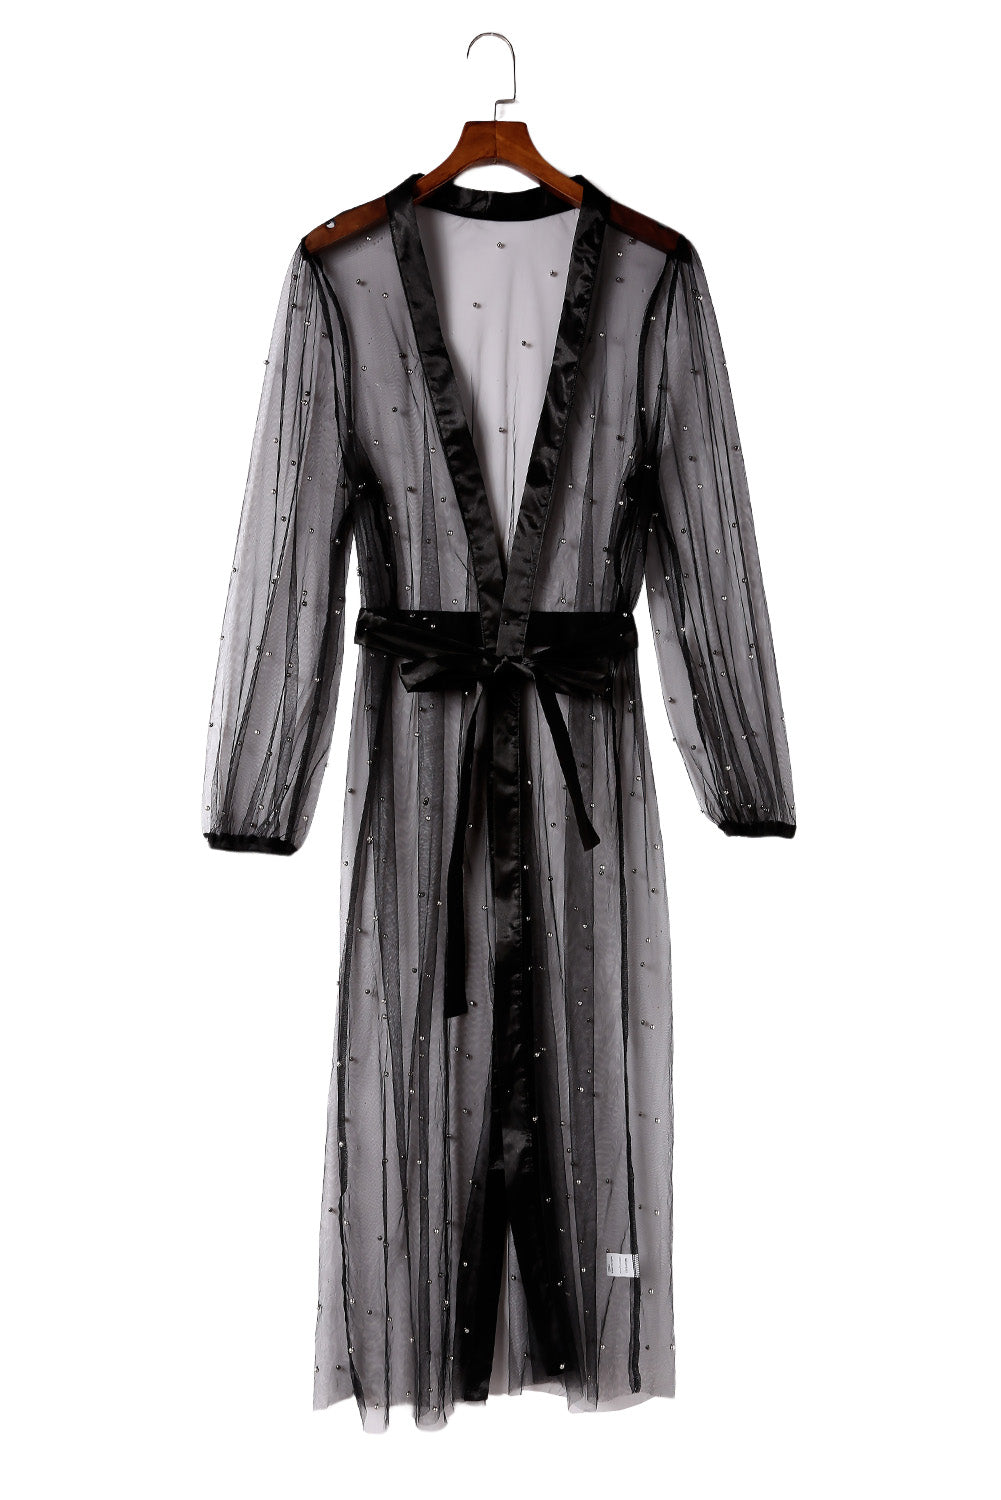 Kimono plumeau noir en tulle transparent orné